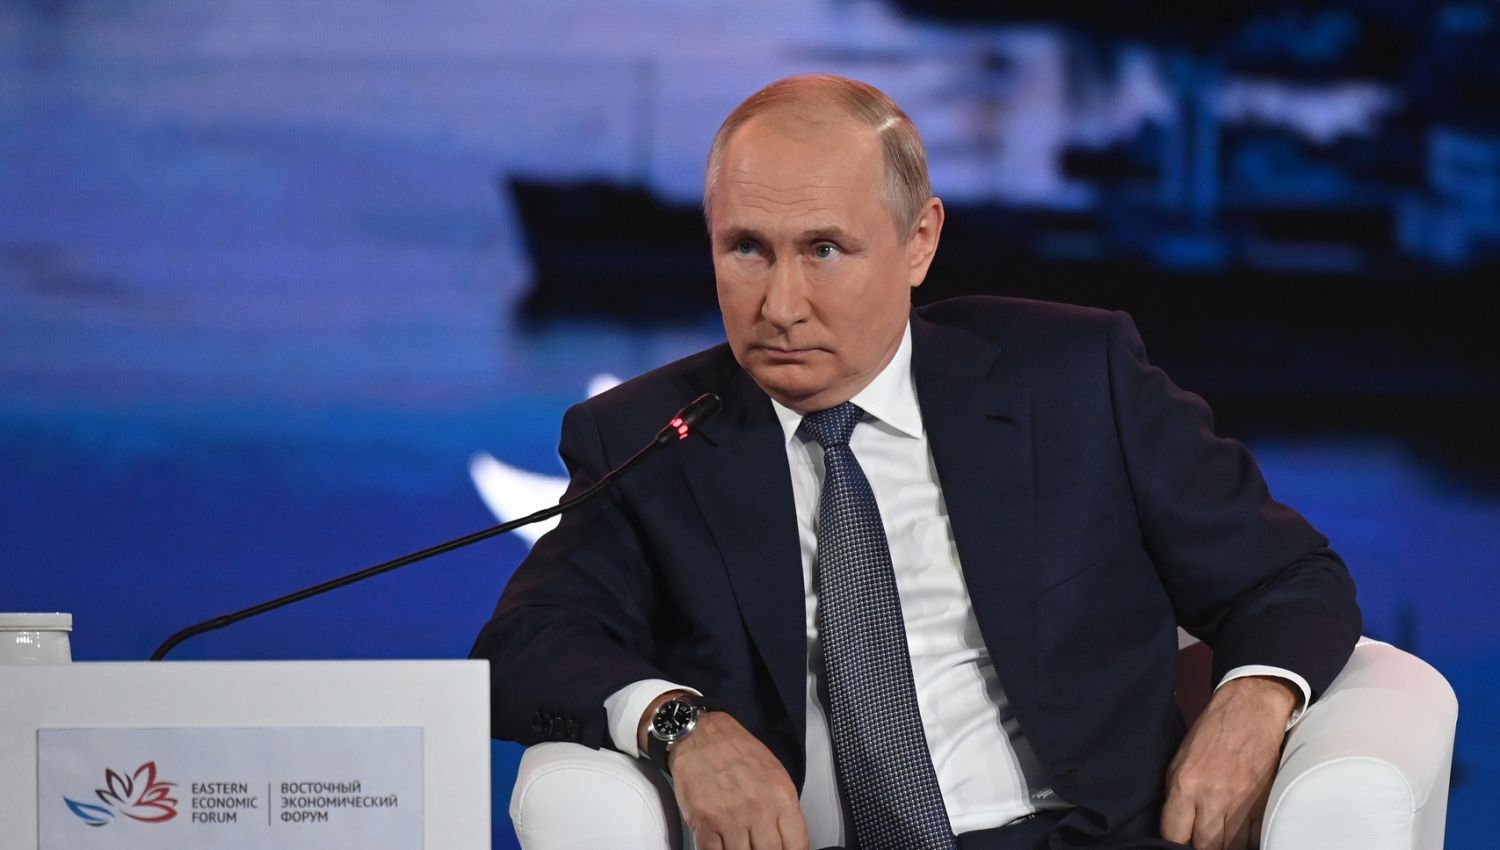 بوتين يعيد صياغة العلاقات الدولية و"إسرائيل" الخاسر الأكبر